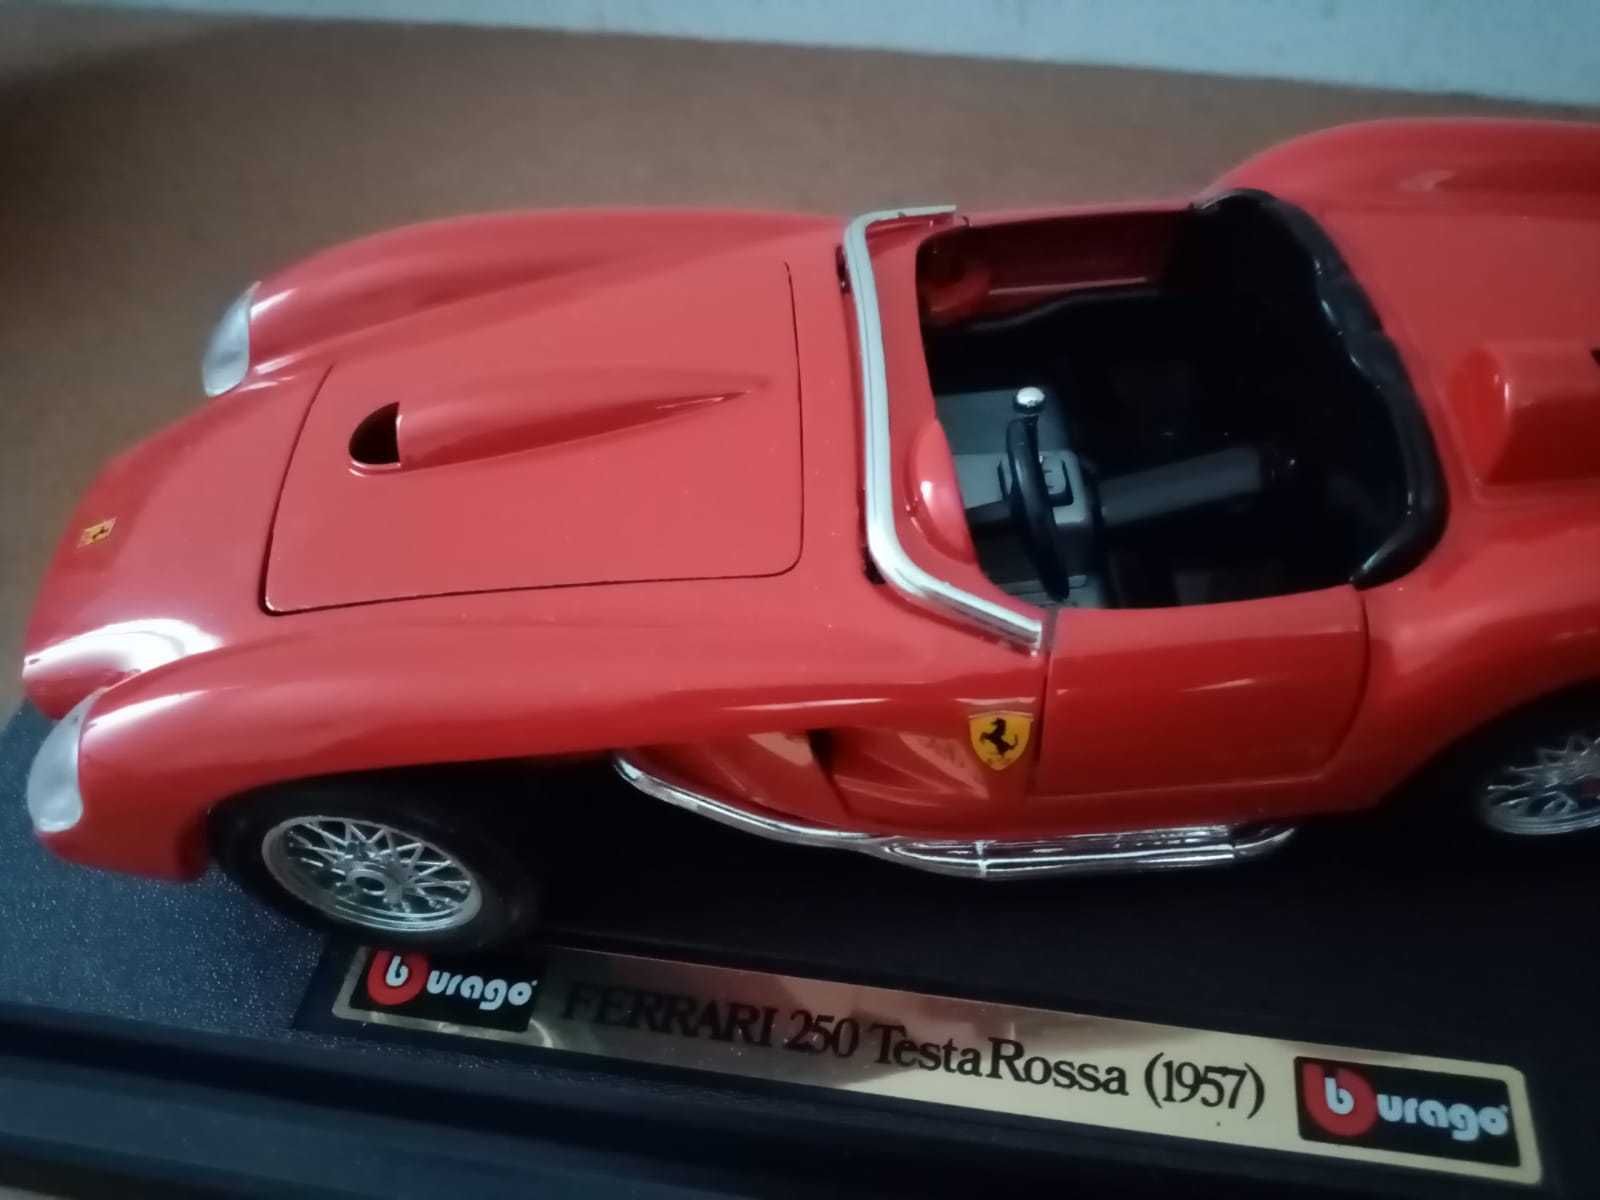 miniatura automóvel: Ferrari Testa Rossa, da Burago, ainda na caixa